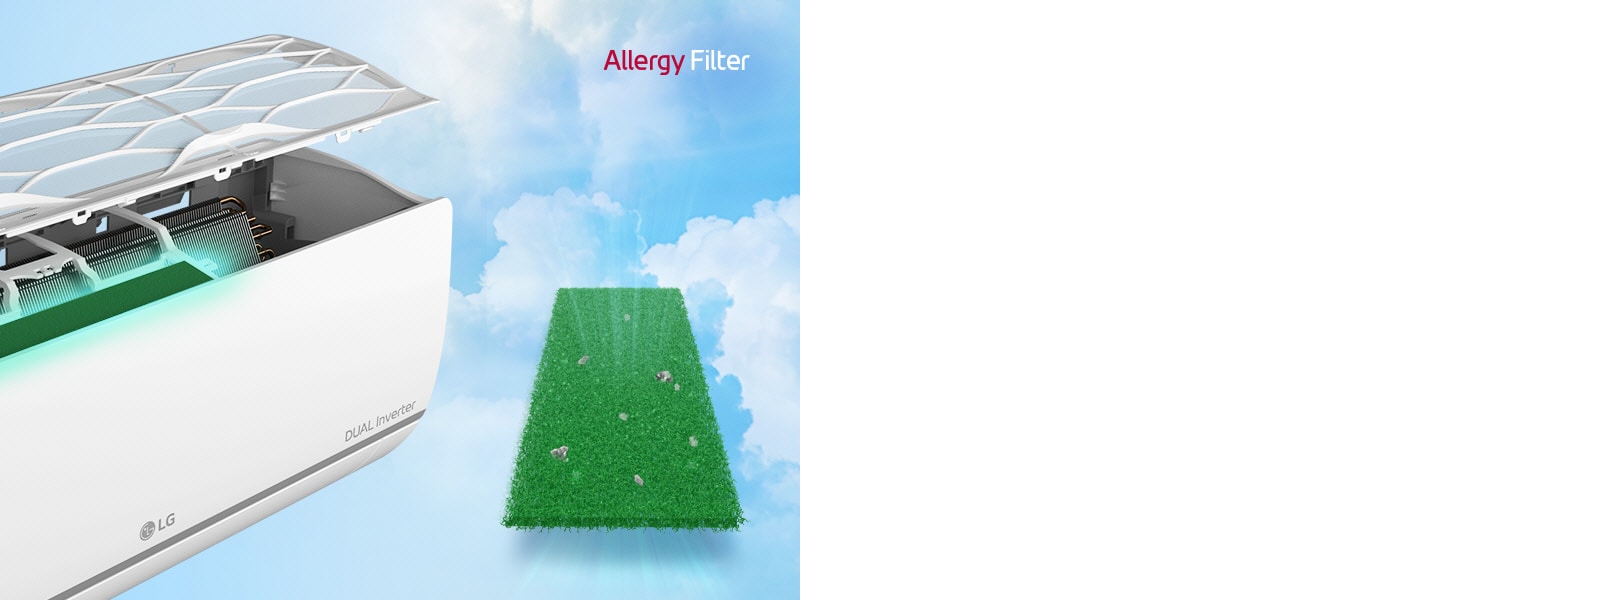 Pohľad zboku na klimatizáciu. Nad ňou sú vysunuté filtre, aby bolo vidno filter alergénov nainštalovaný vnútri. Vedľa zariadenia sa nachádza celý zelený filter alergénov, v ktorom sú zachytené roztoče. V pravom hornom rohu sa nachádza logo Allergy Filter.